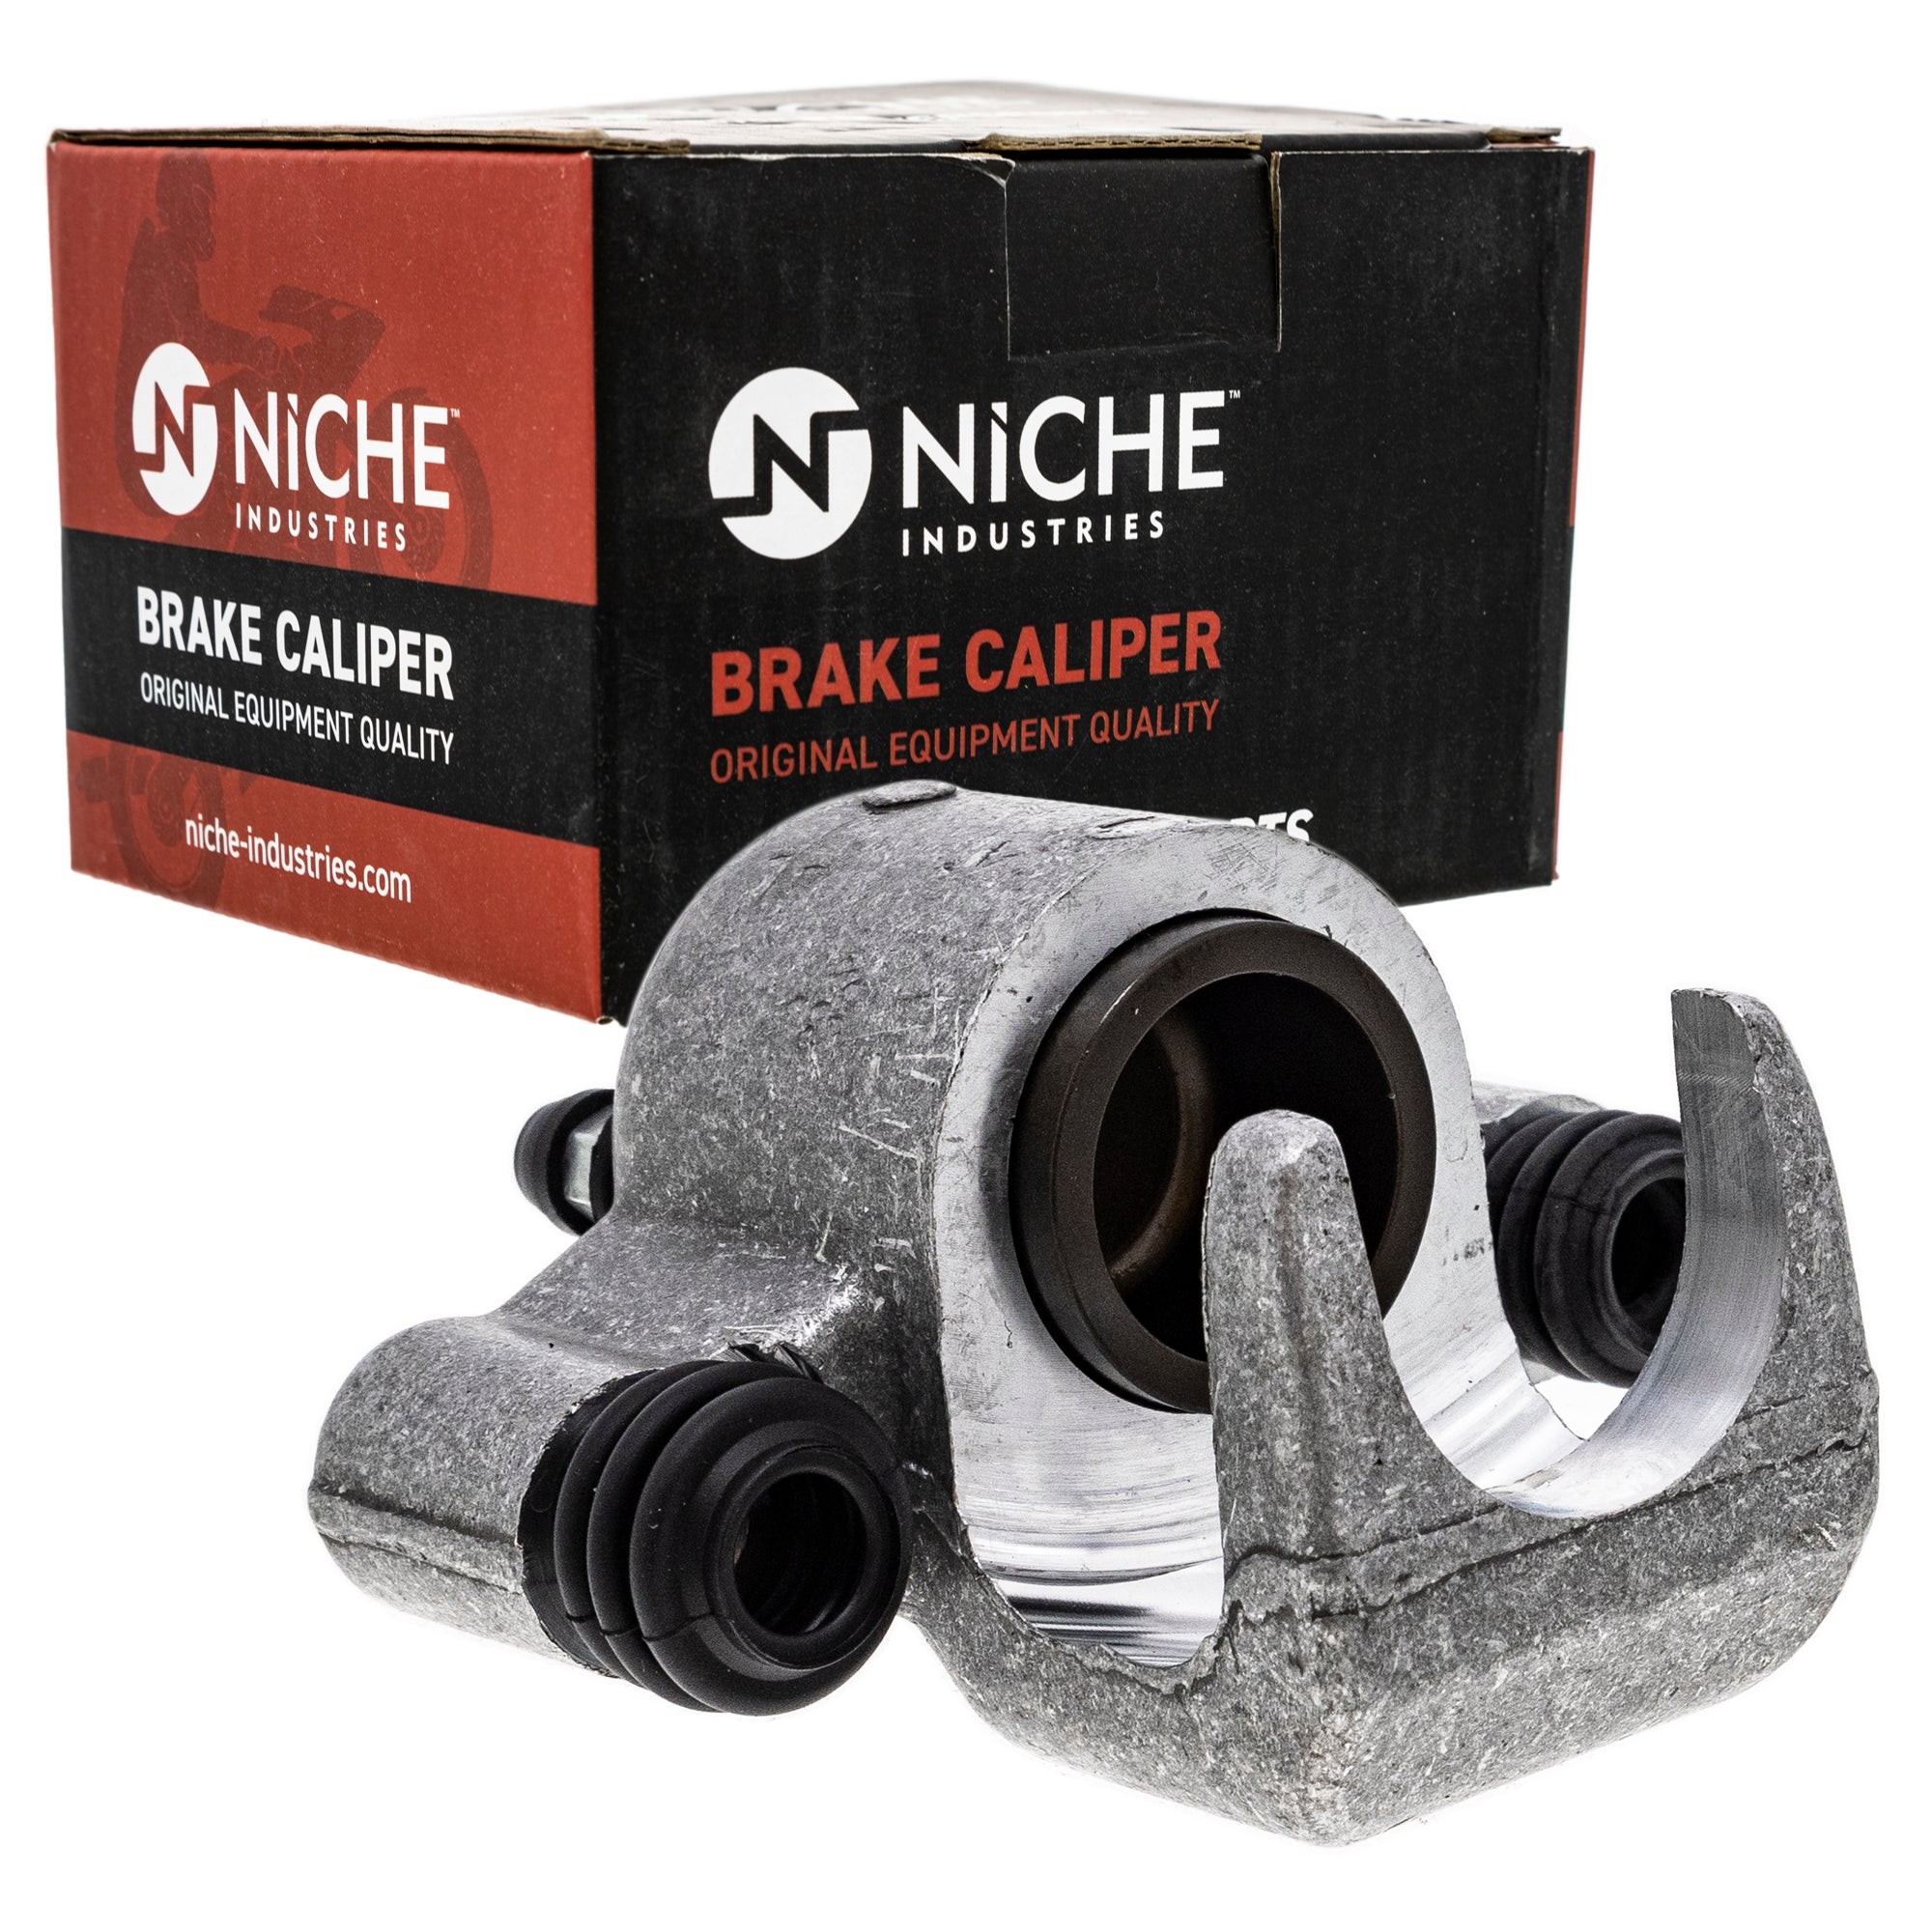 NICHE MK1001037 Brake Caliper Kit